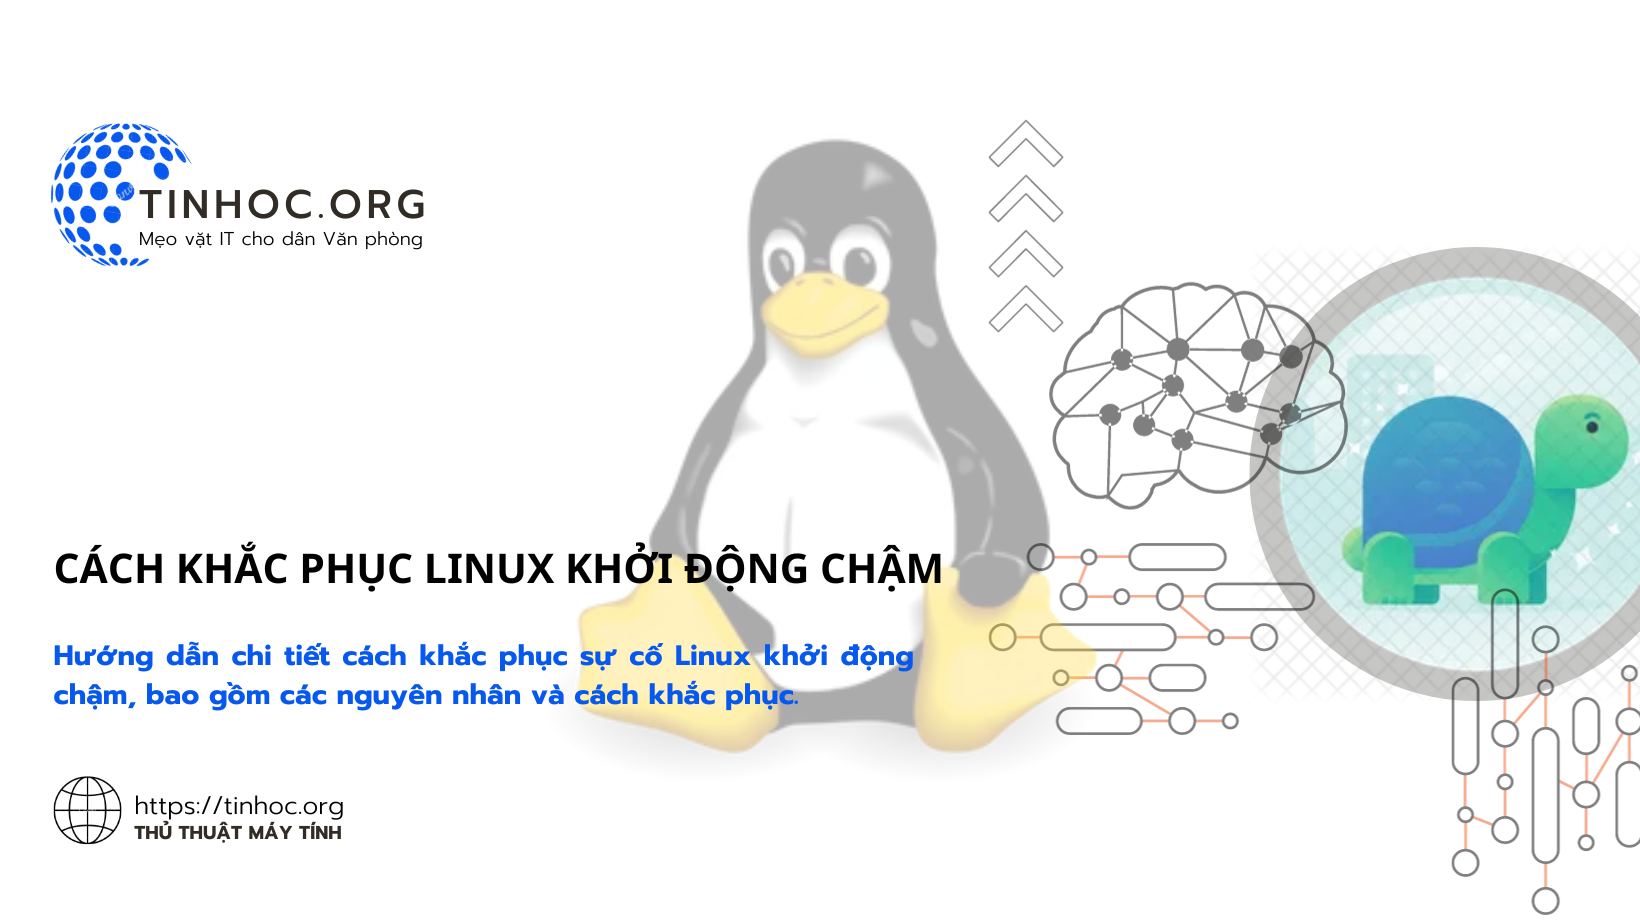 Cách khắc phục Linux khởi động chậm